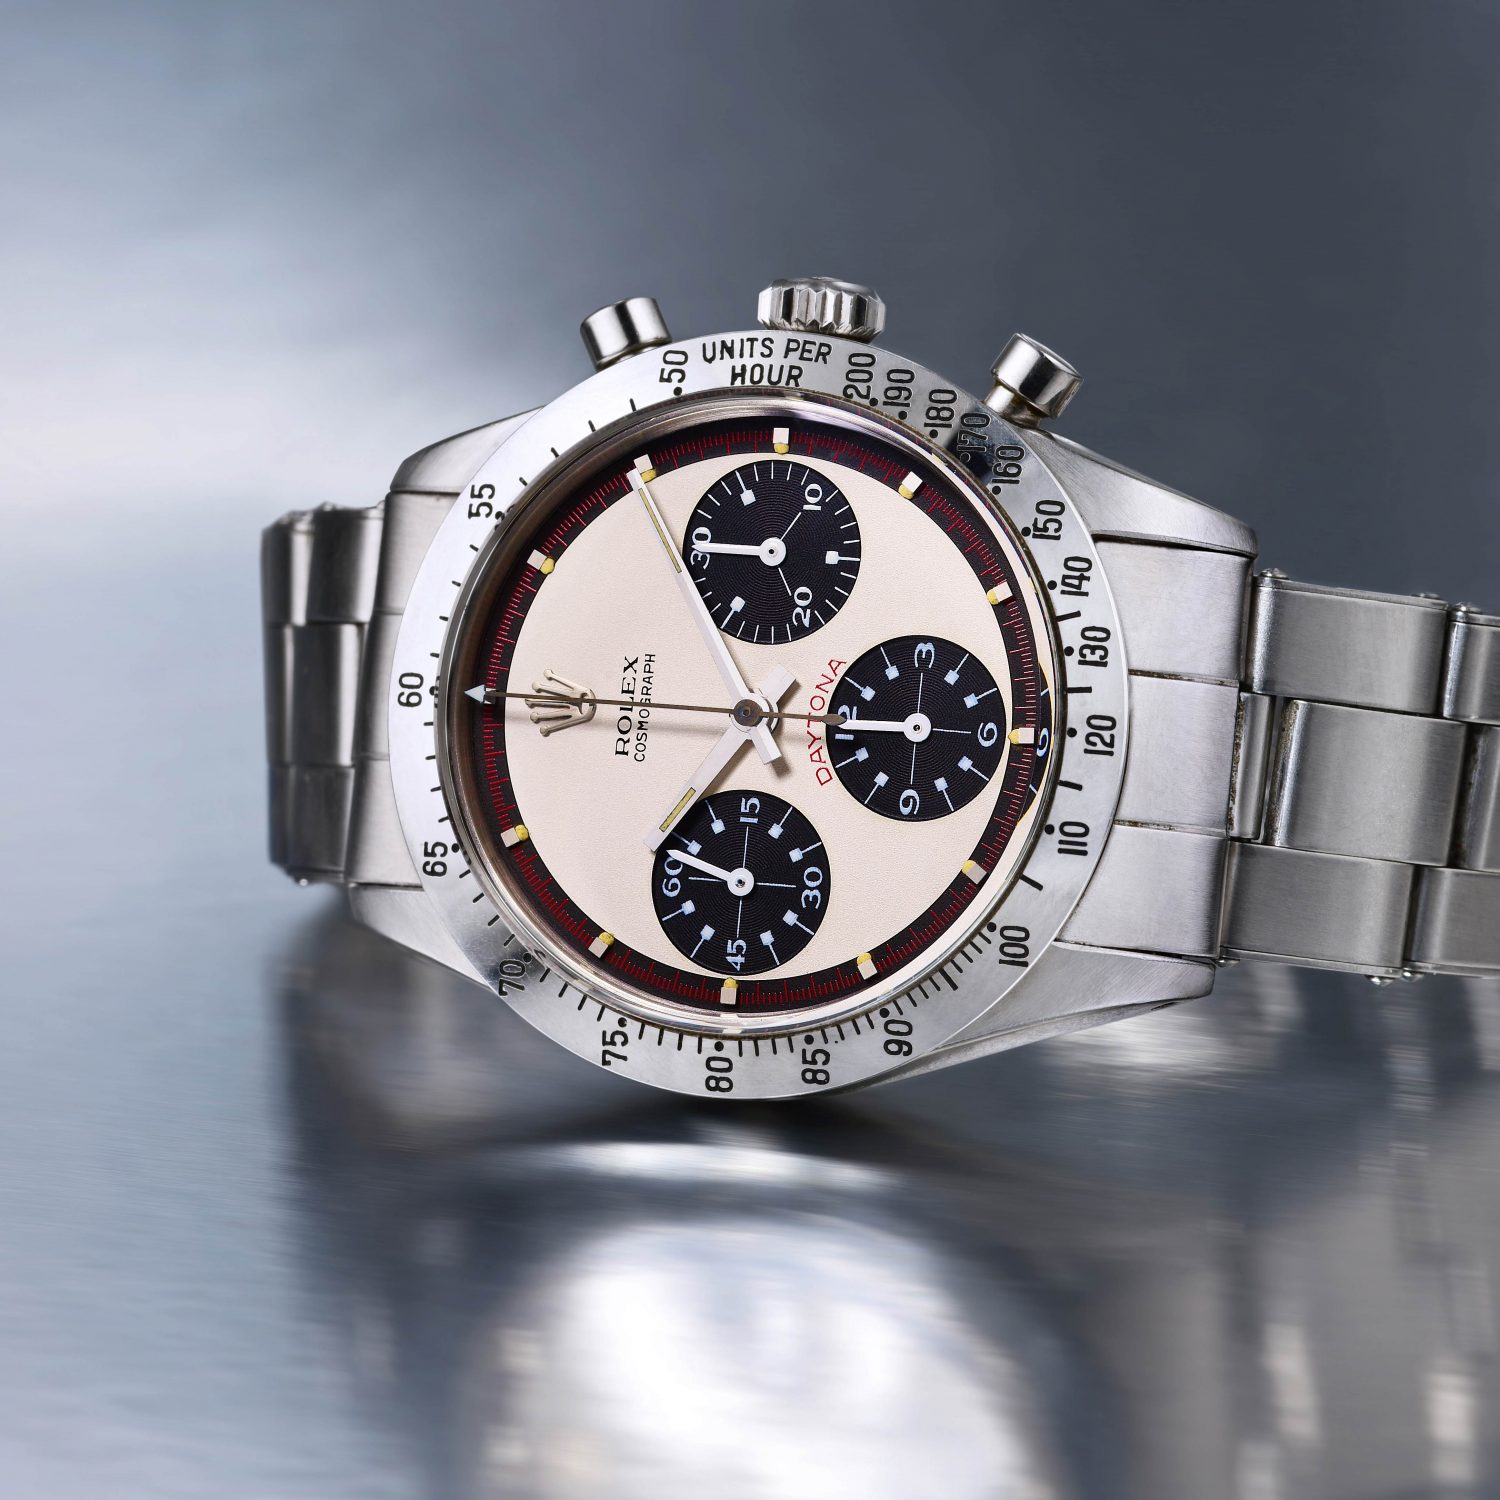 Rolex Paul Newman Daytona - Fortuna NYC Fine Jewelry & Watch Auction